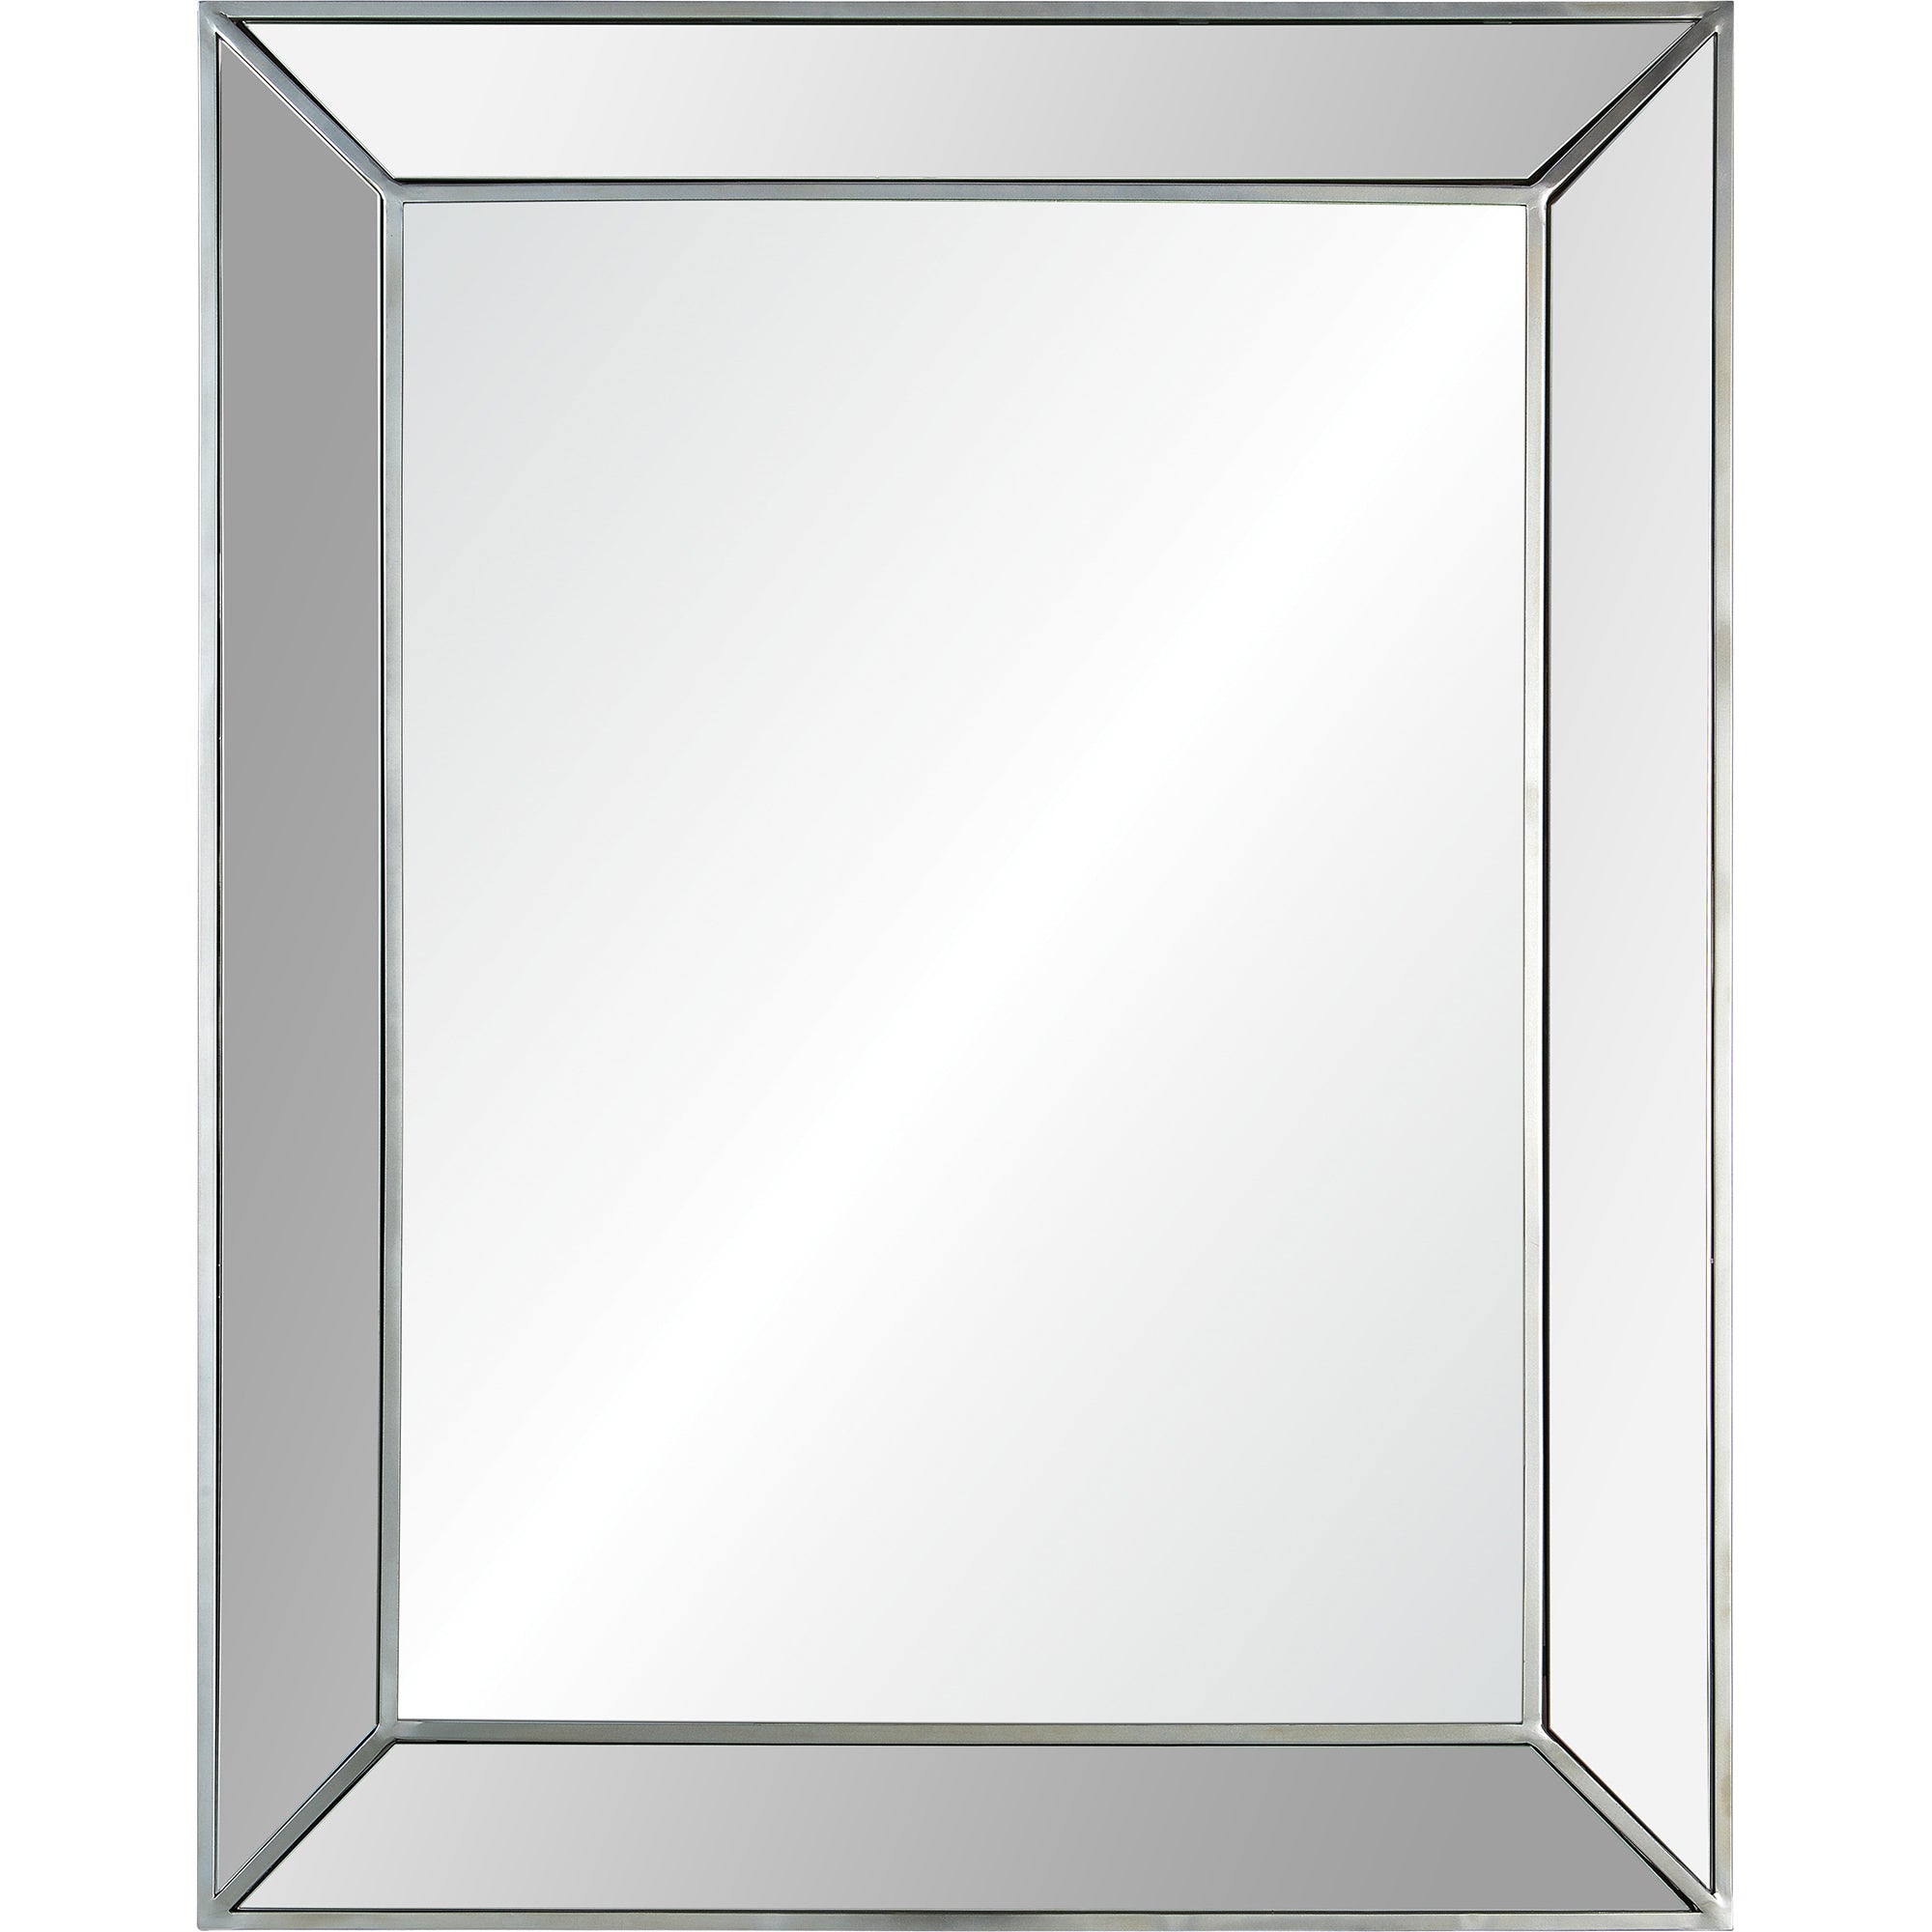 Alex 40" Iron - Silver Finish Mirror